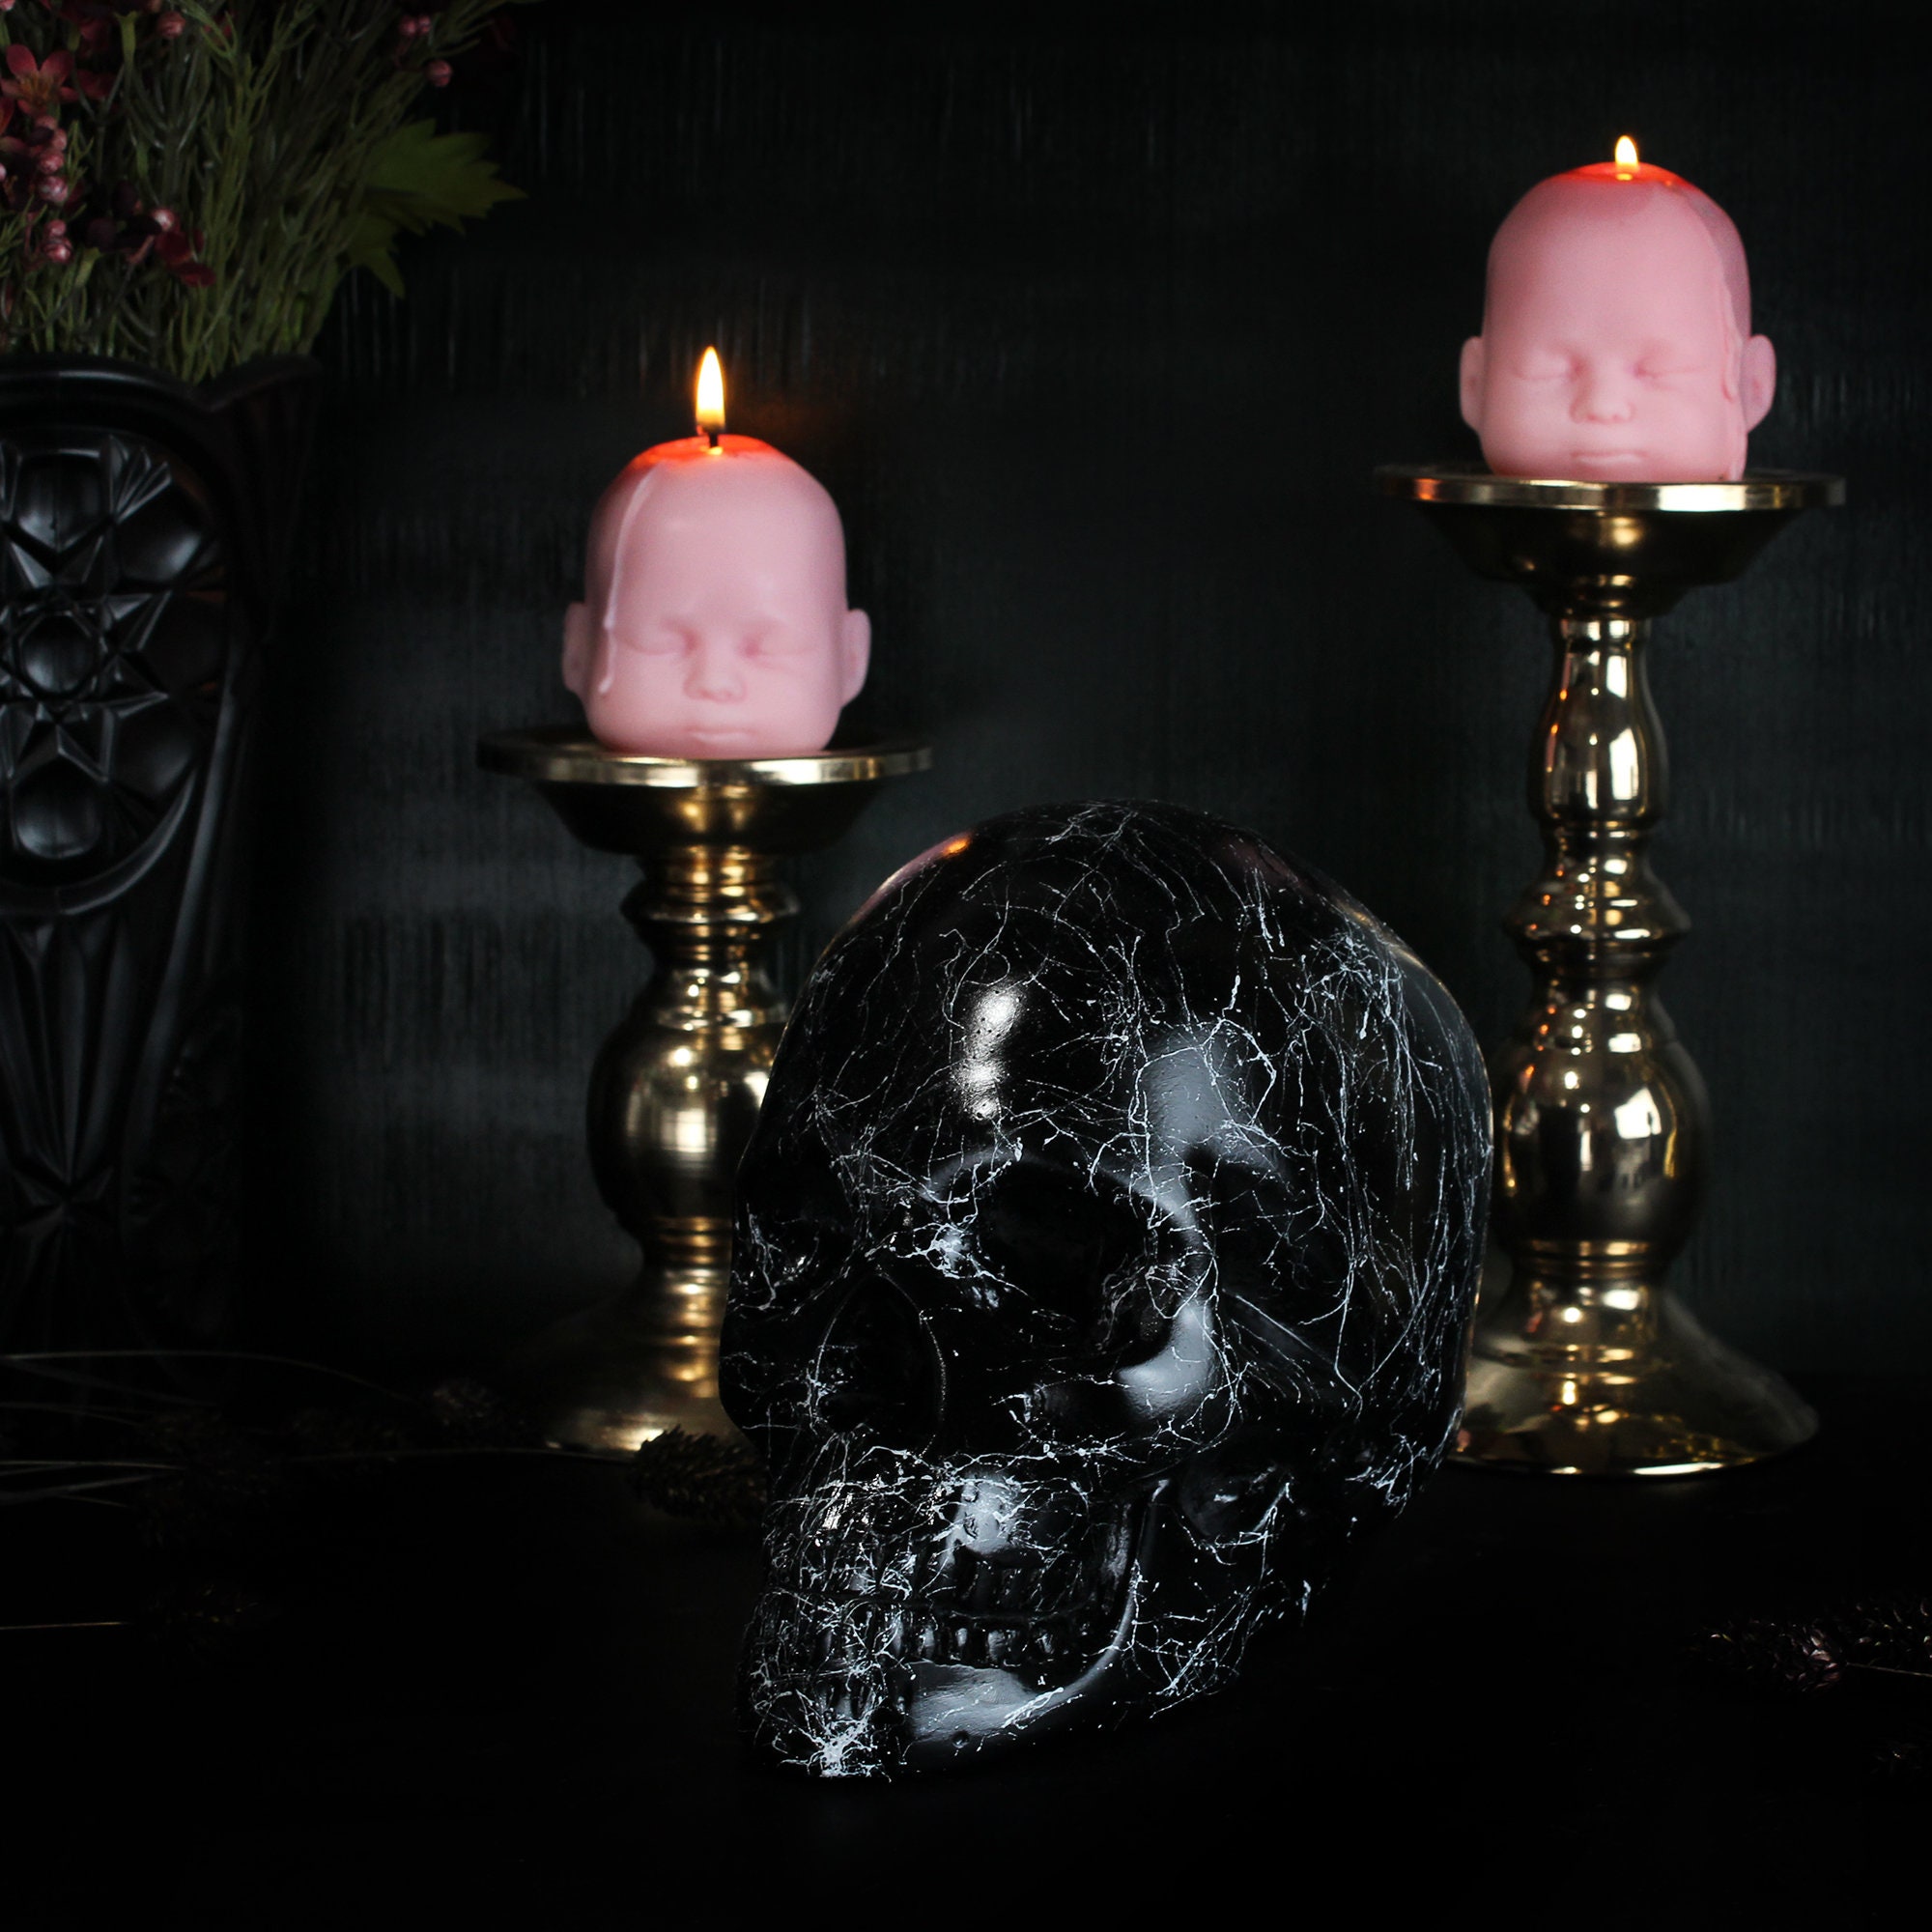 Skull of J.Doe Ornament – The Blackened Teeth Ltd